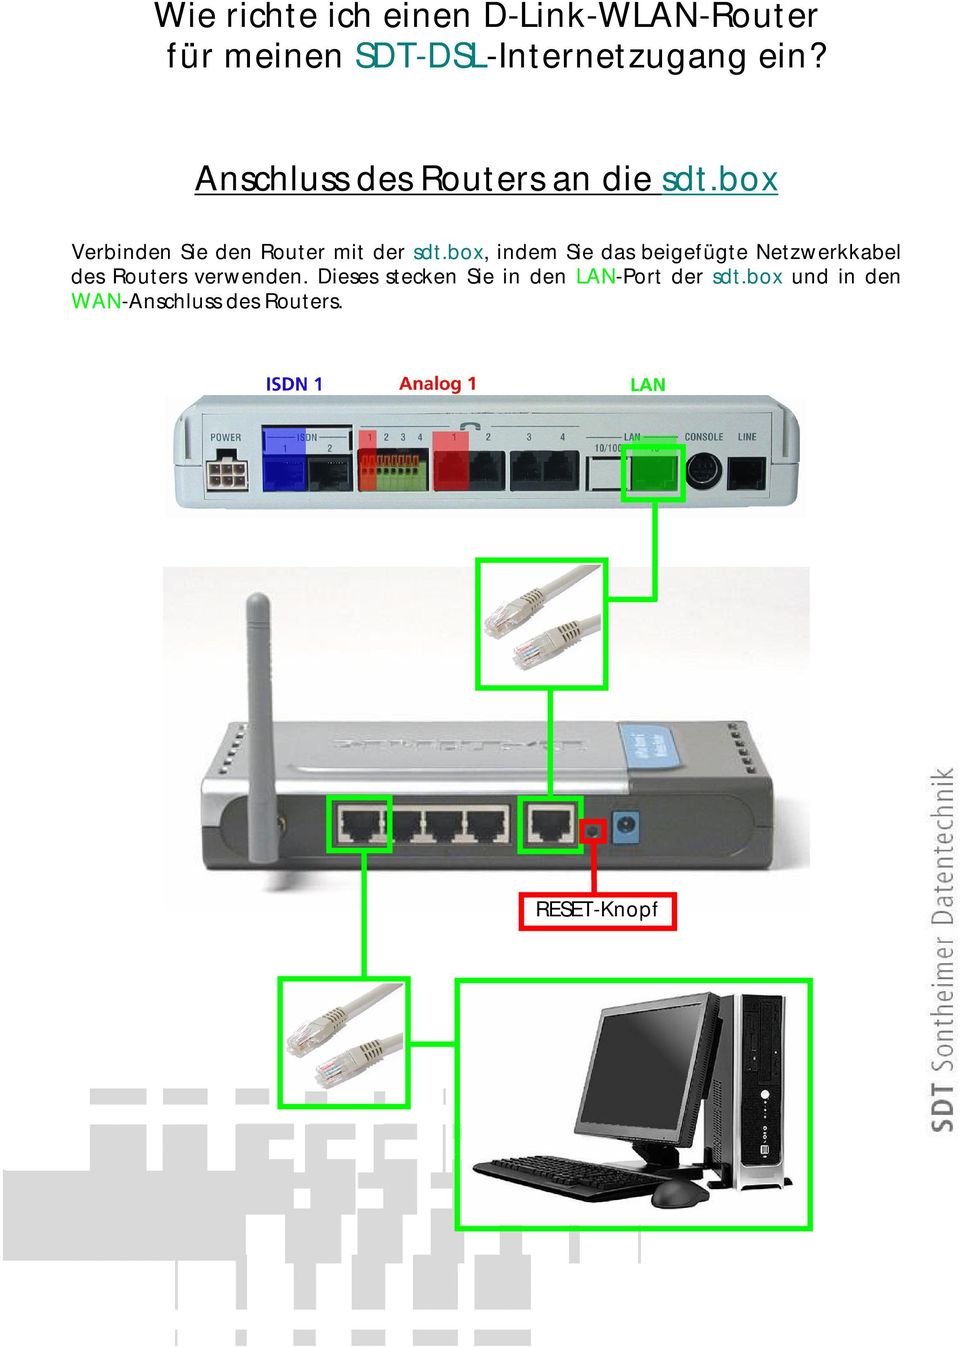 box, indem Sie das beigefügte Netzwerkkabel des Routers verwenden.